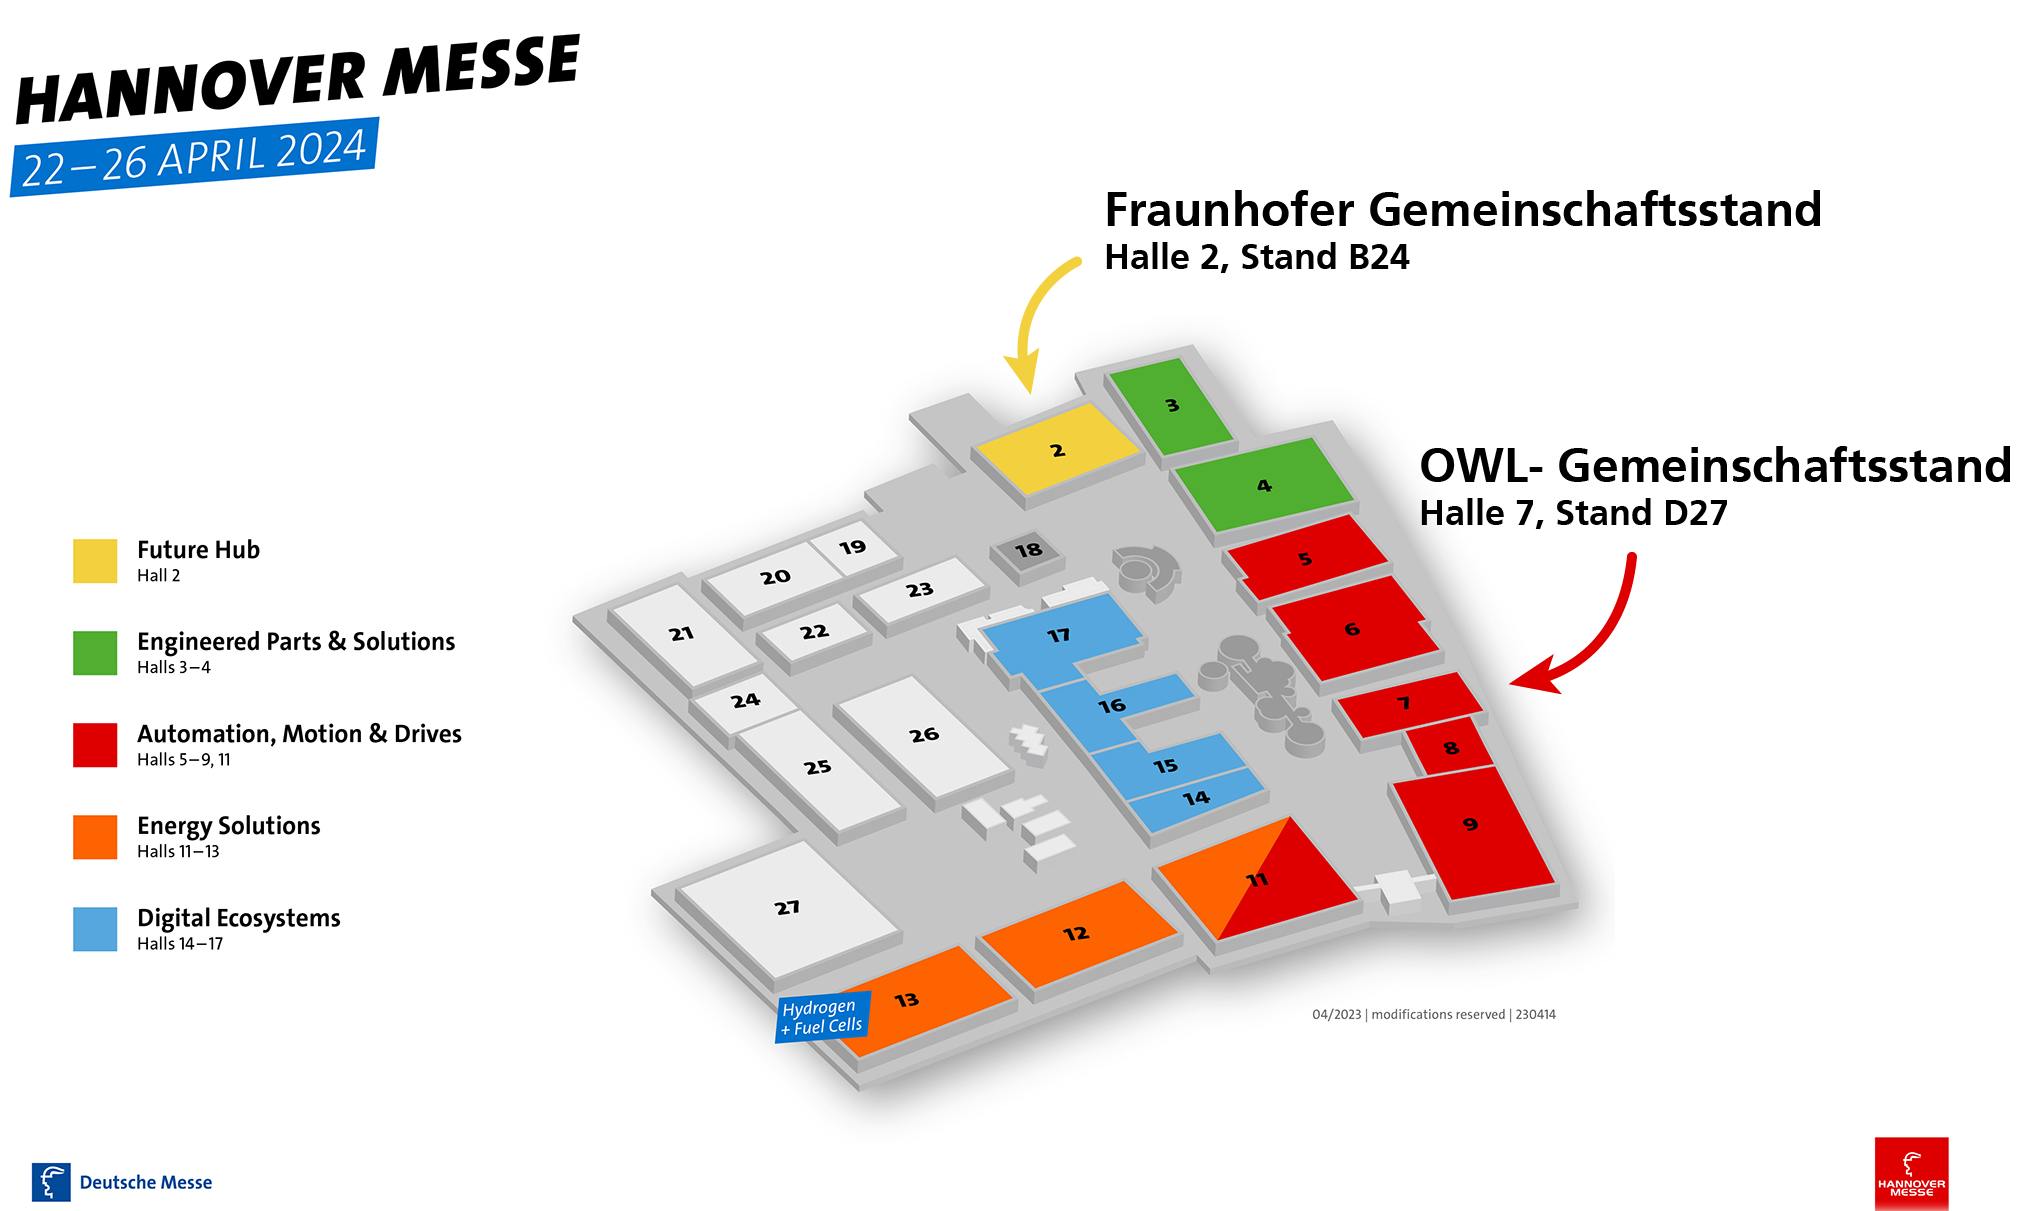 Hallenplan der Hannover Messe 2024.